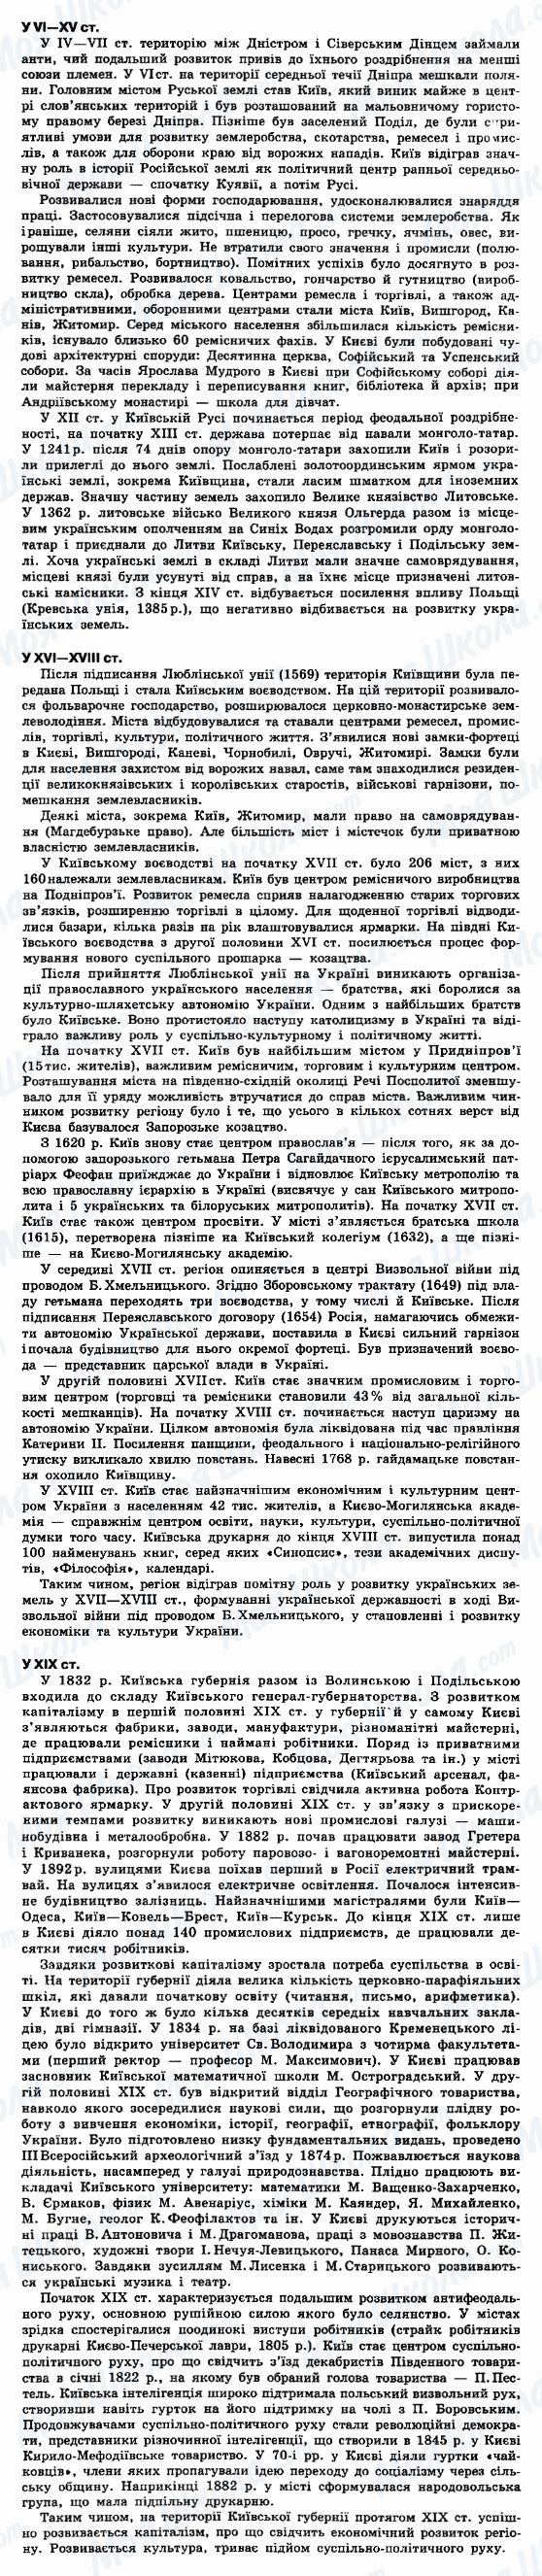 ДПА История Украины 9 класс страница 1